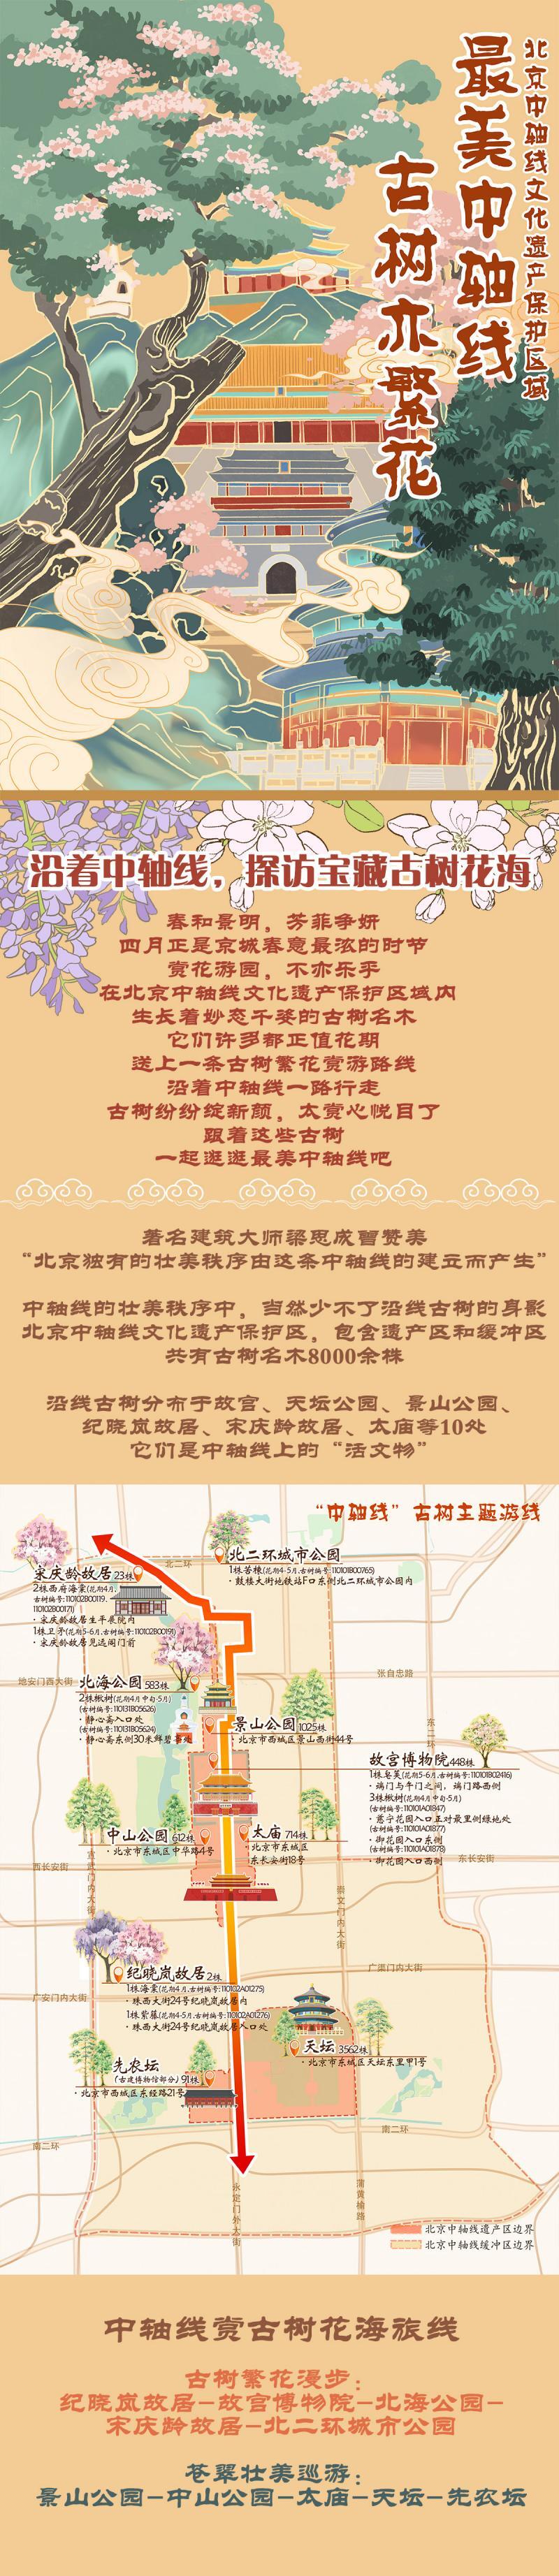 北京发布4条春季古树主题游线松鼠ai教育的效果好不好2023已更新(网易/腾讯)松鼠ai教育的效果好不好